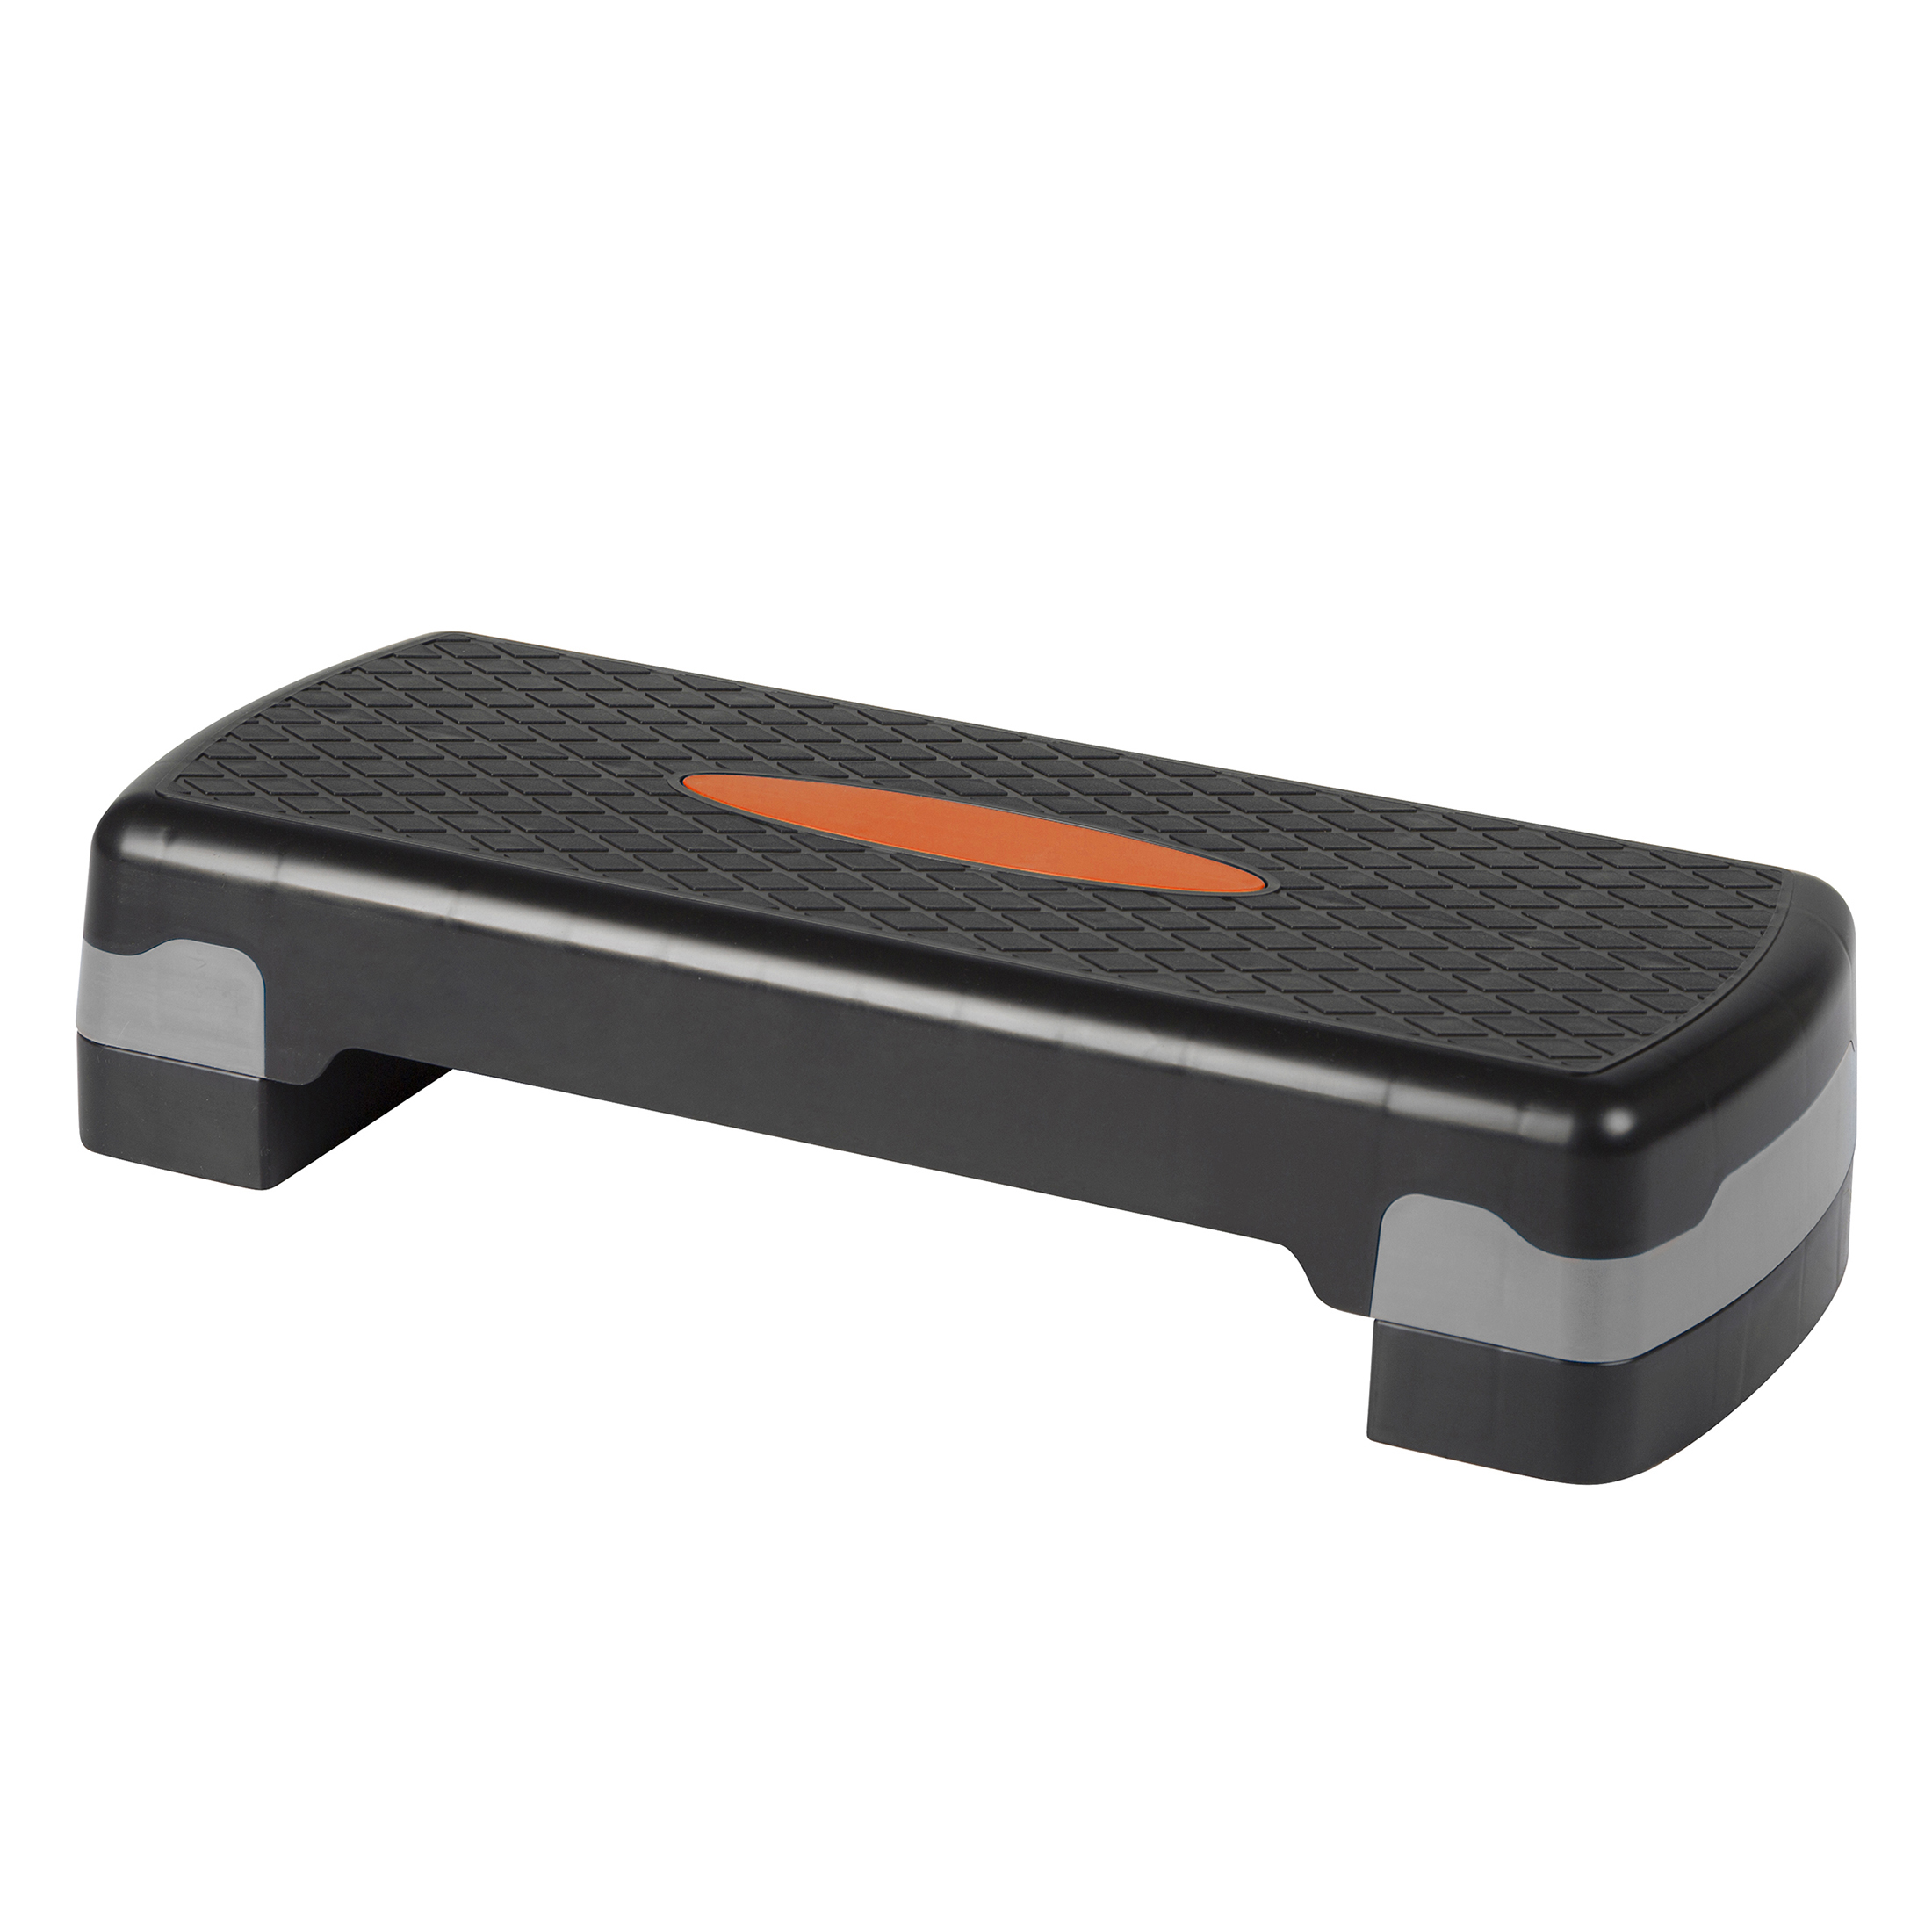 kg 2 zu Stufen Aerobic in nutzen, Steppbrett ZOOMYO schwarz/orange für 150 Fitnessbrett, zuhause bis